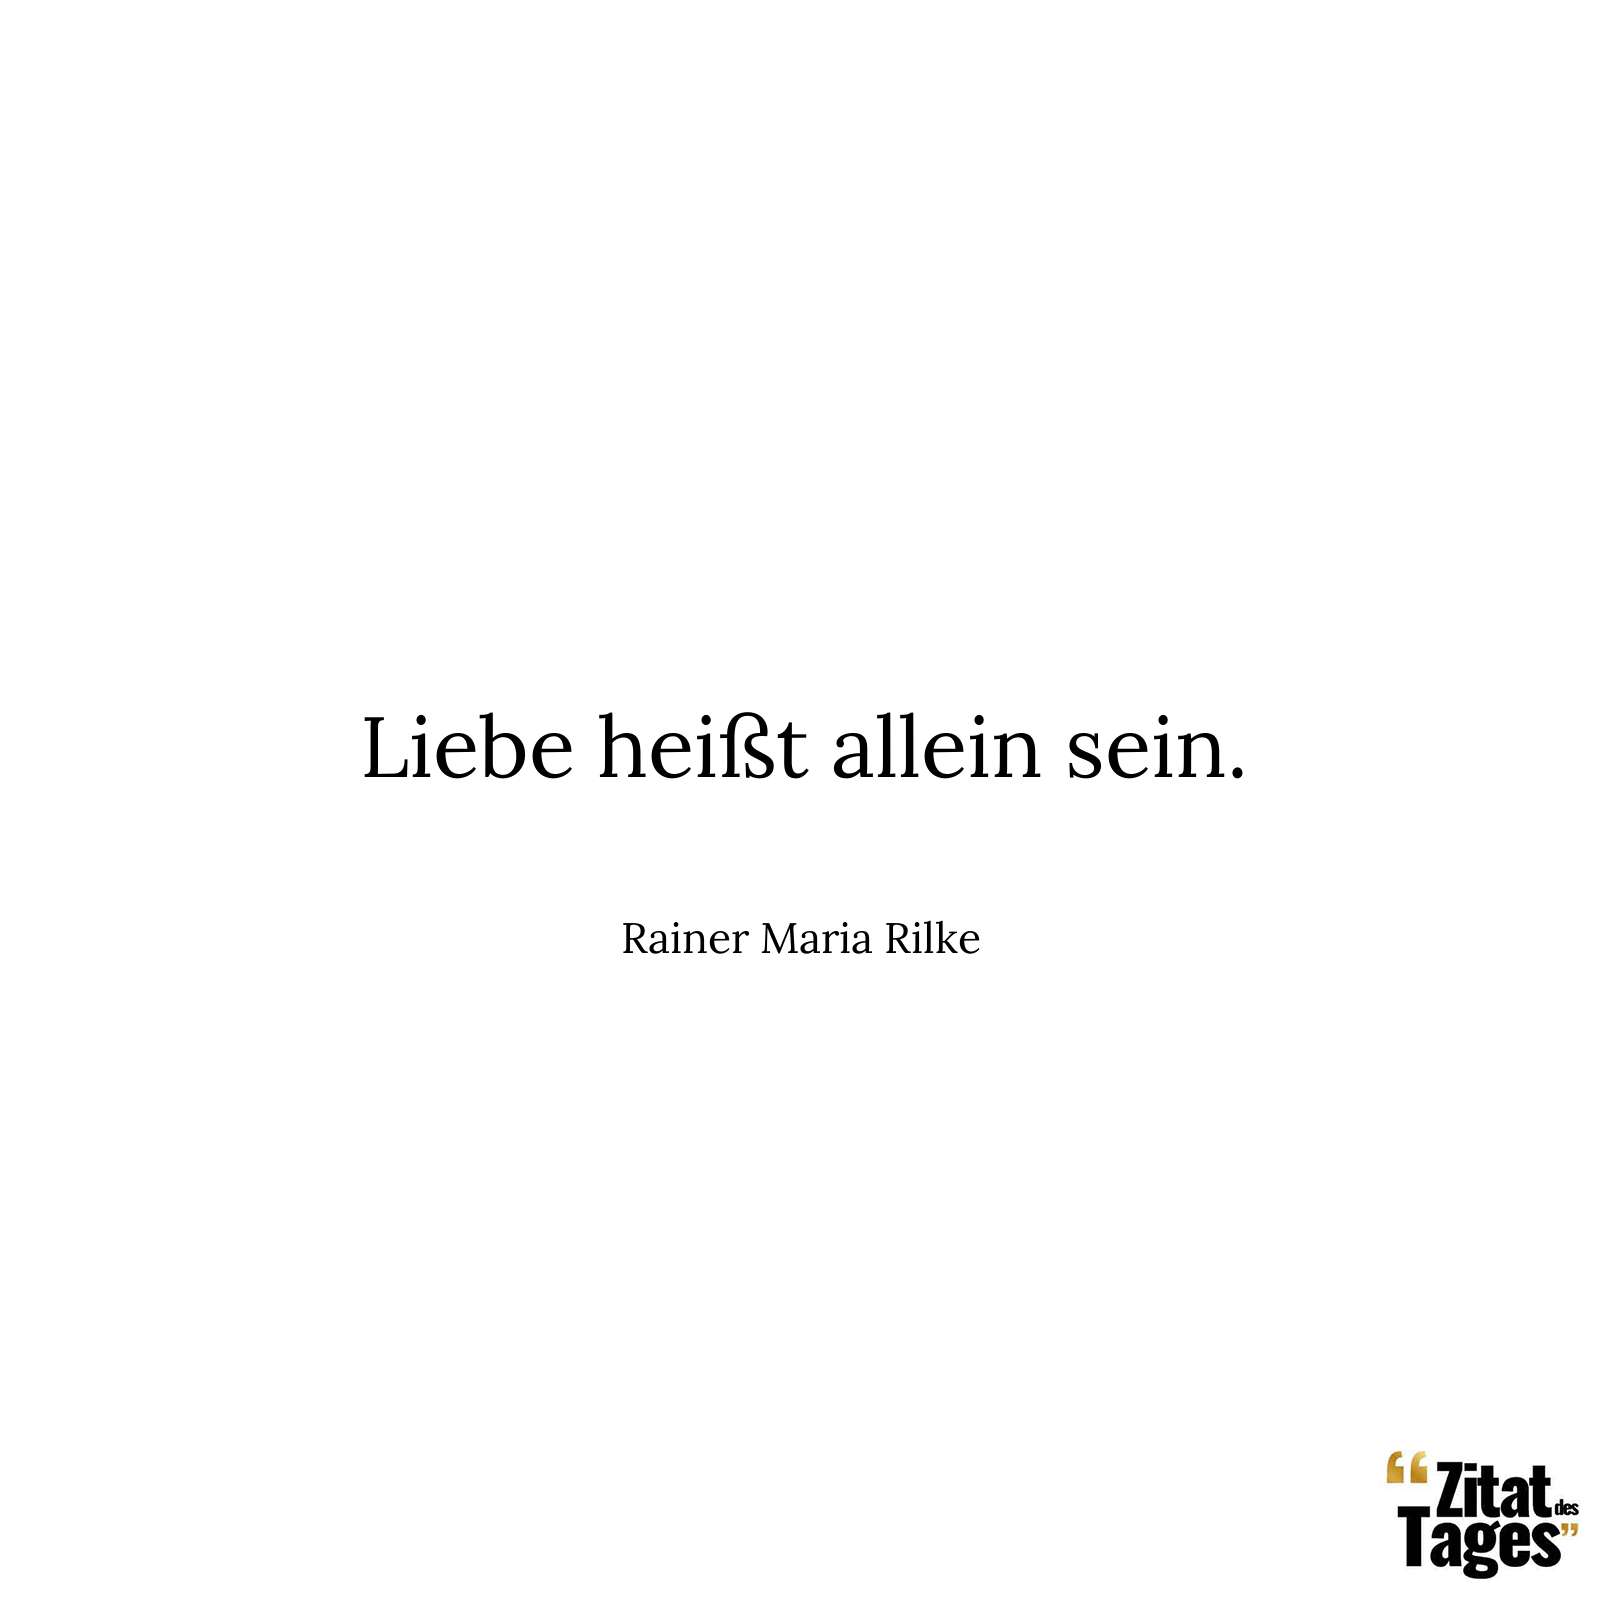 Liebe heißt allein sein. - Rainer Maria Rilke